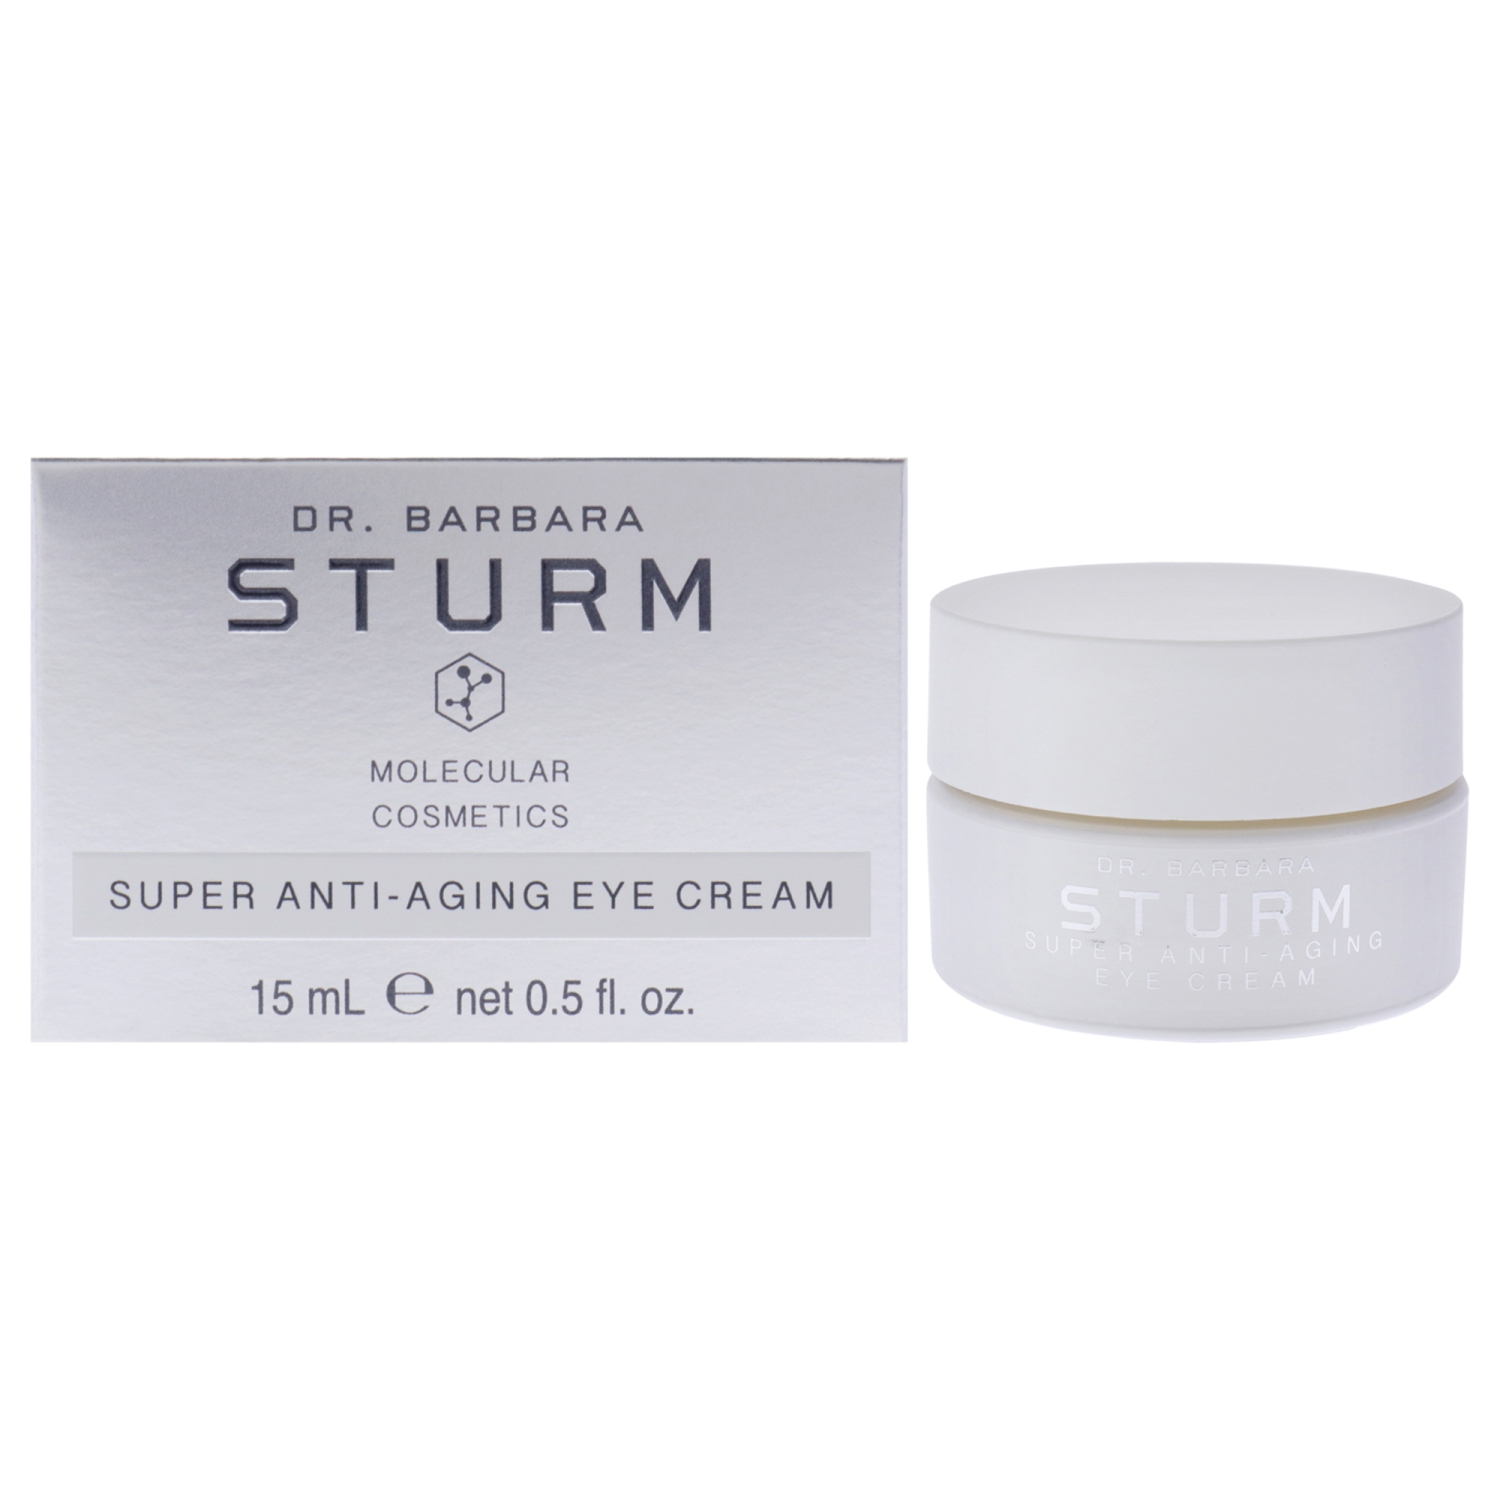 Super Anti-Aging Eye Cream by Dr. Barbara Sturm for Women - 0.5 oz Cream